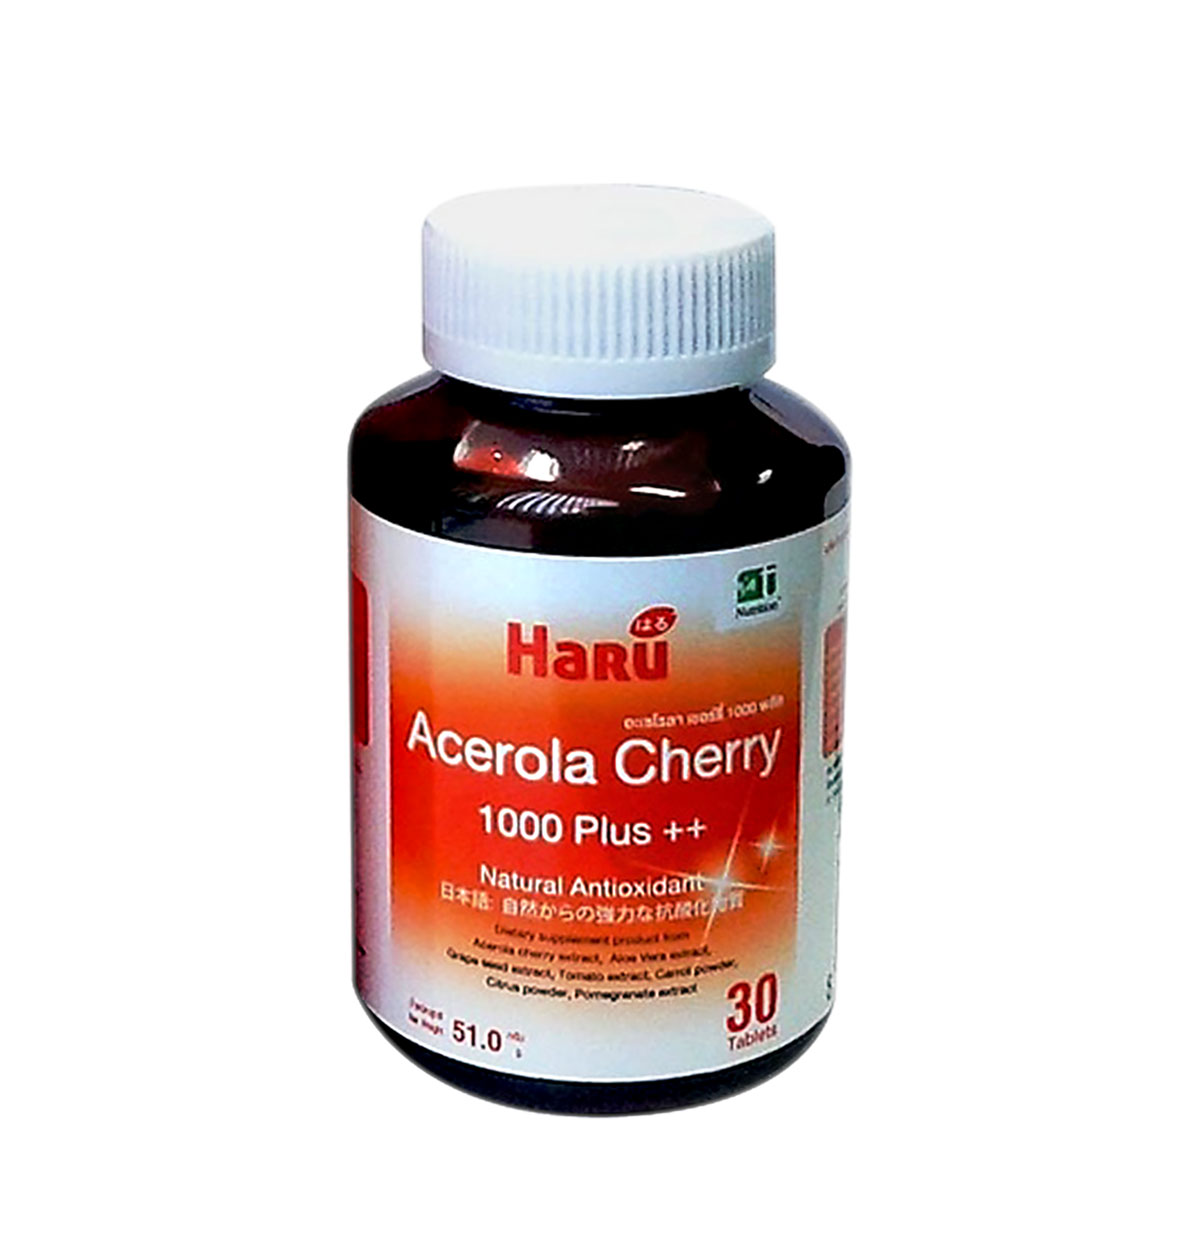 Haru Acerola Cherry 1000 Plus++ , 30 Capsules